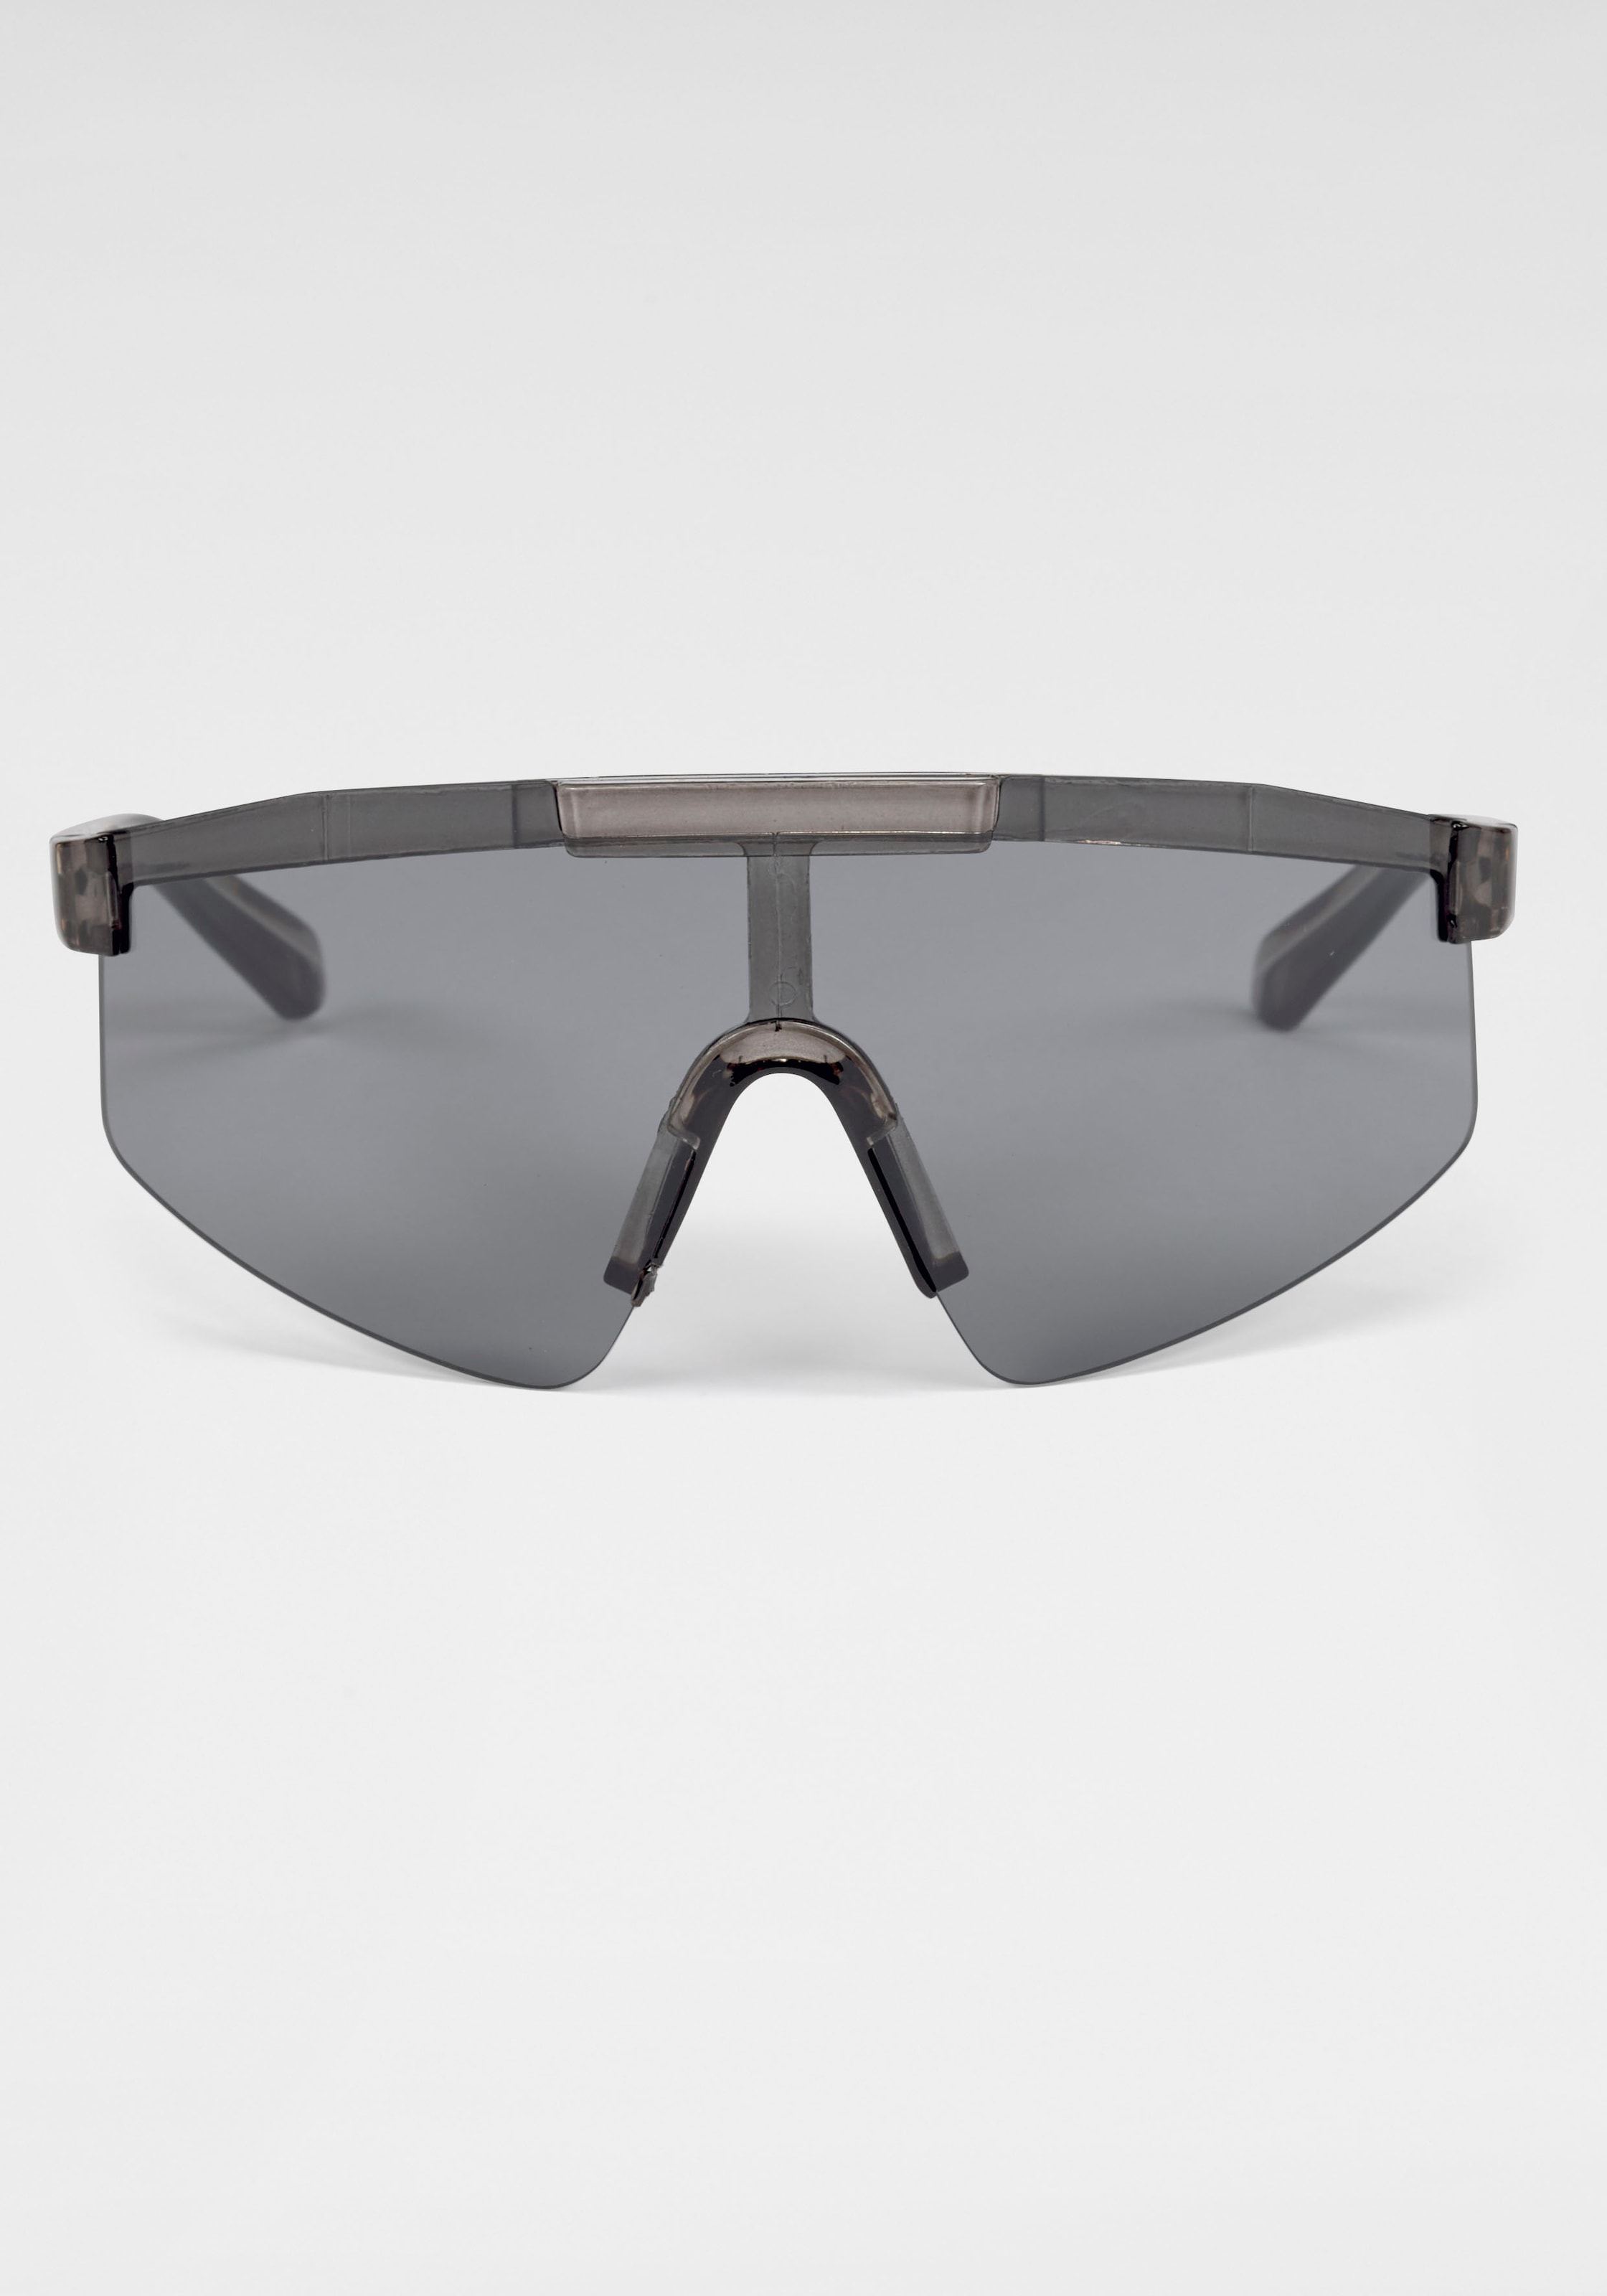 BACK IN BLACK Eyewear Sonnenbrille, Stylische Sportbrille mit crystal-smoke Rahmen und dunklen Gläsern